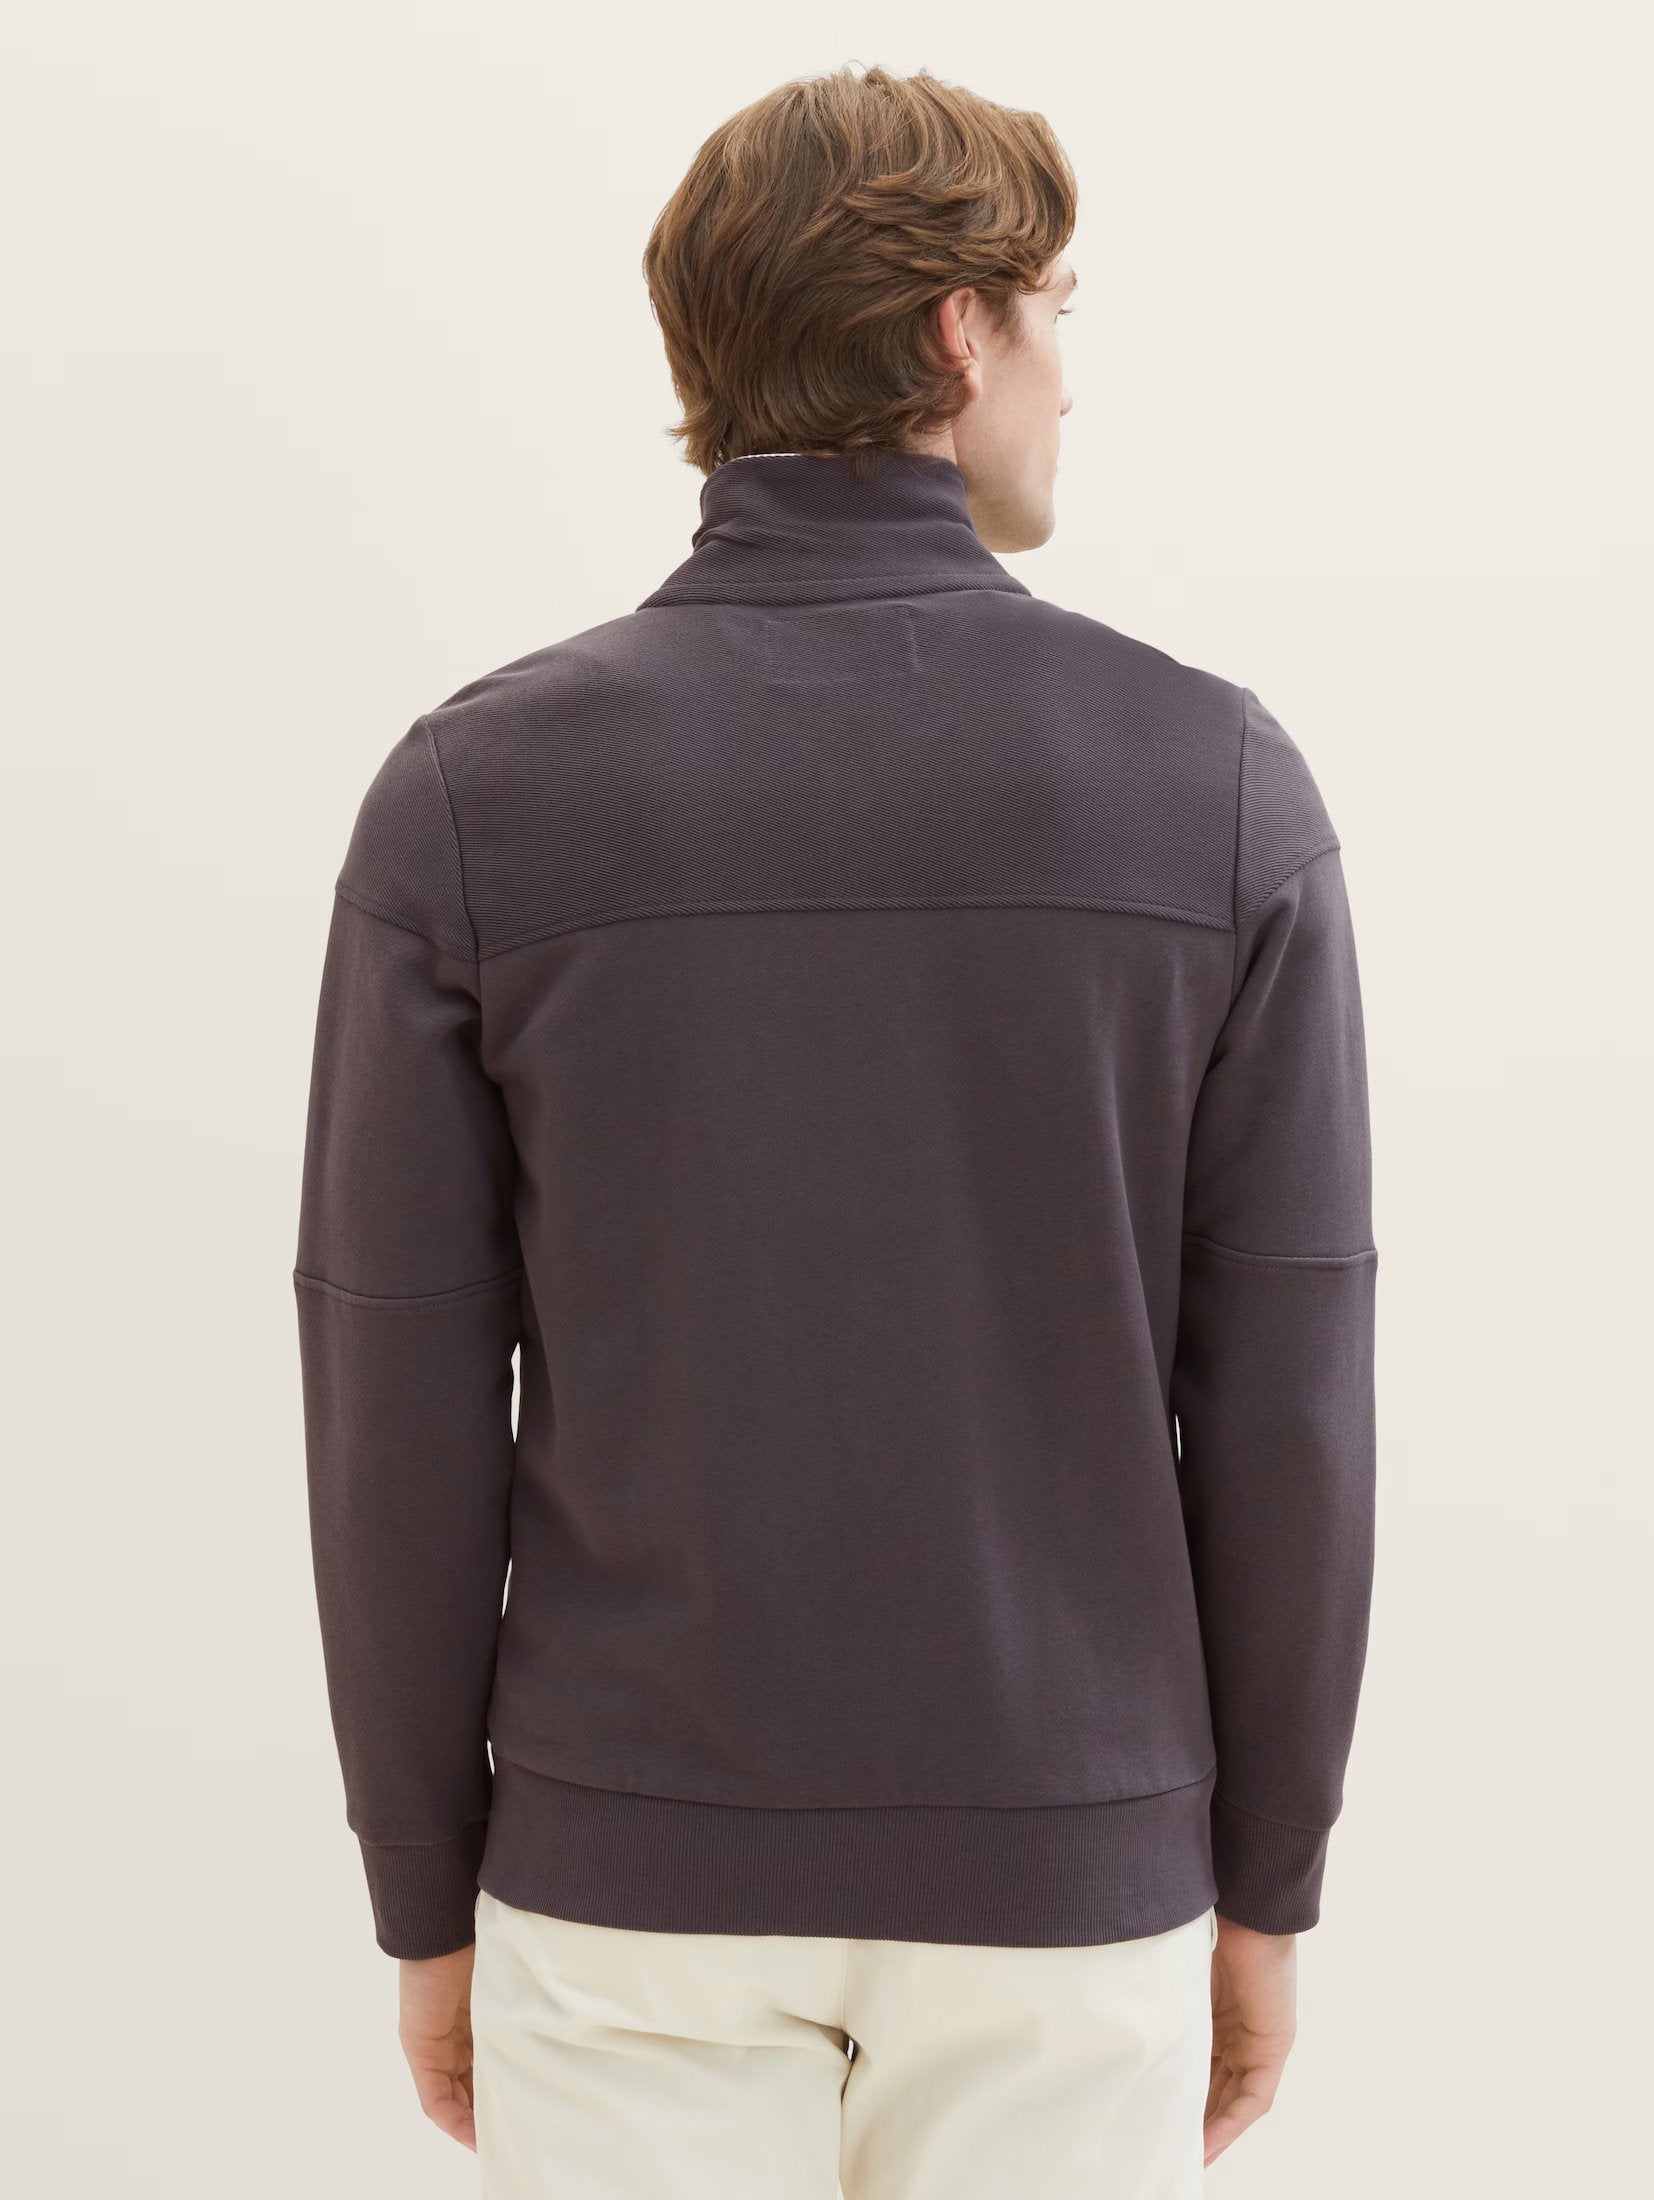 Tom Tailor Stand-up Collar Tarmac Grey Jacket